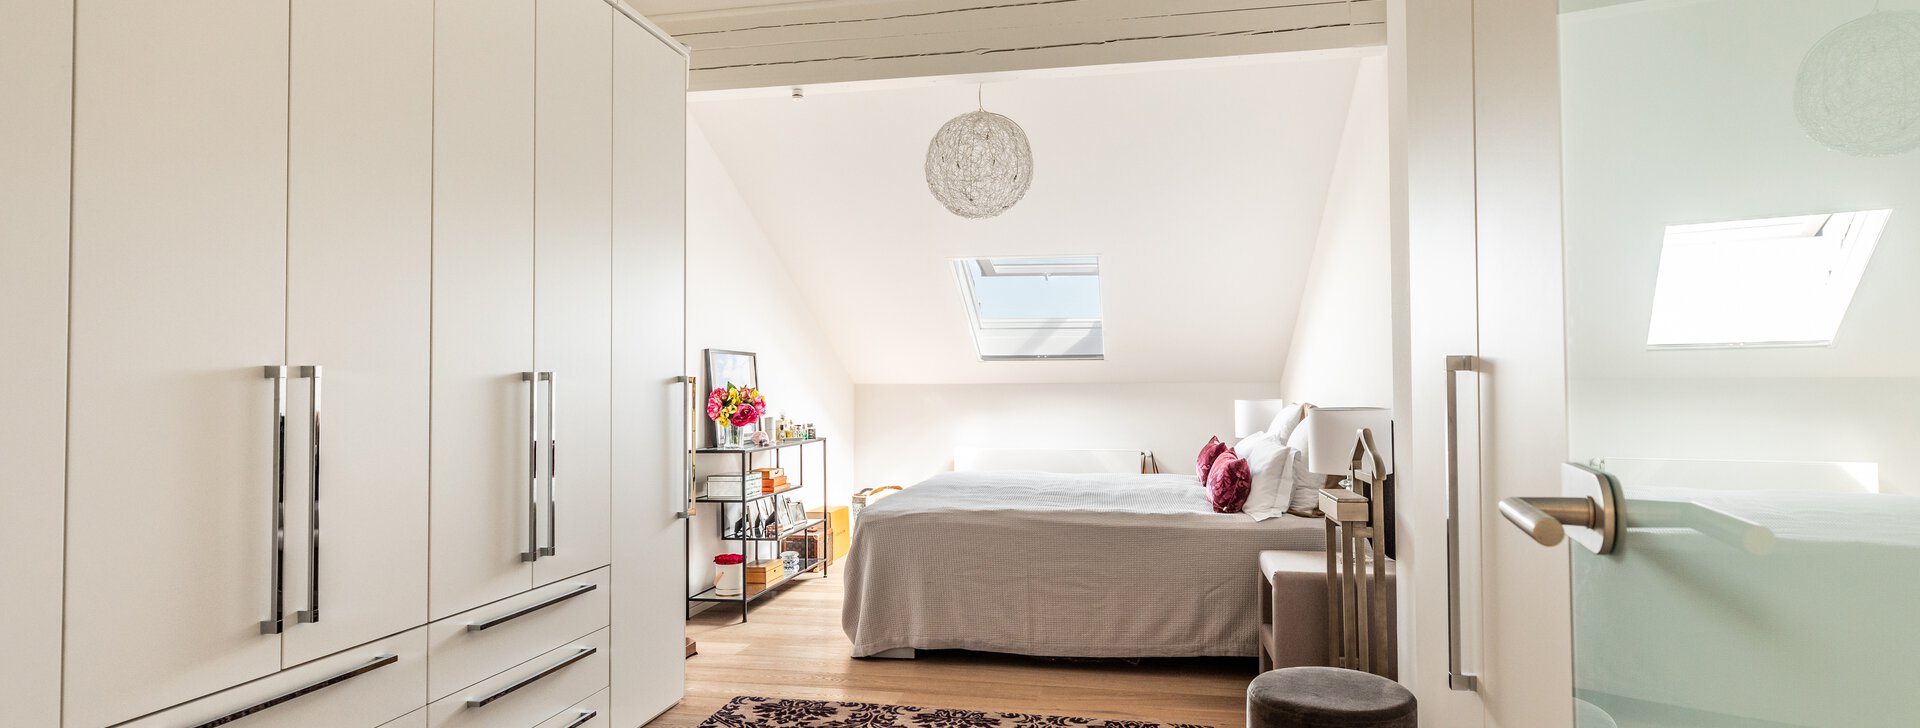 Schlafzimmer Dachgeschosswohnung in Bergen, Immobilie kaufen, Bergen | © HausBauHaus GmbH